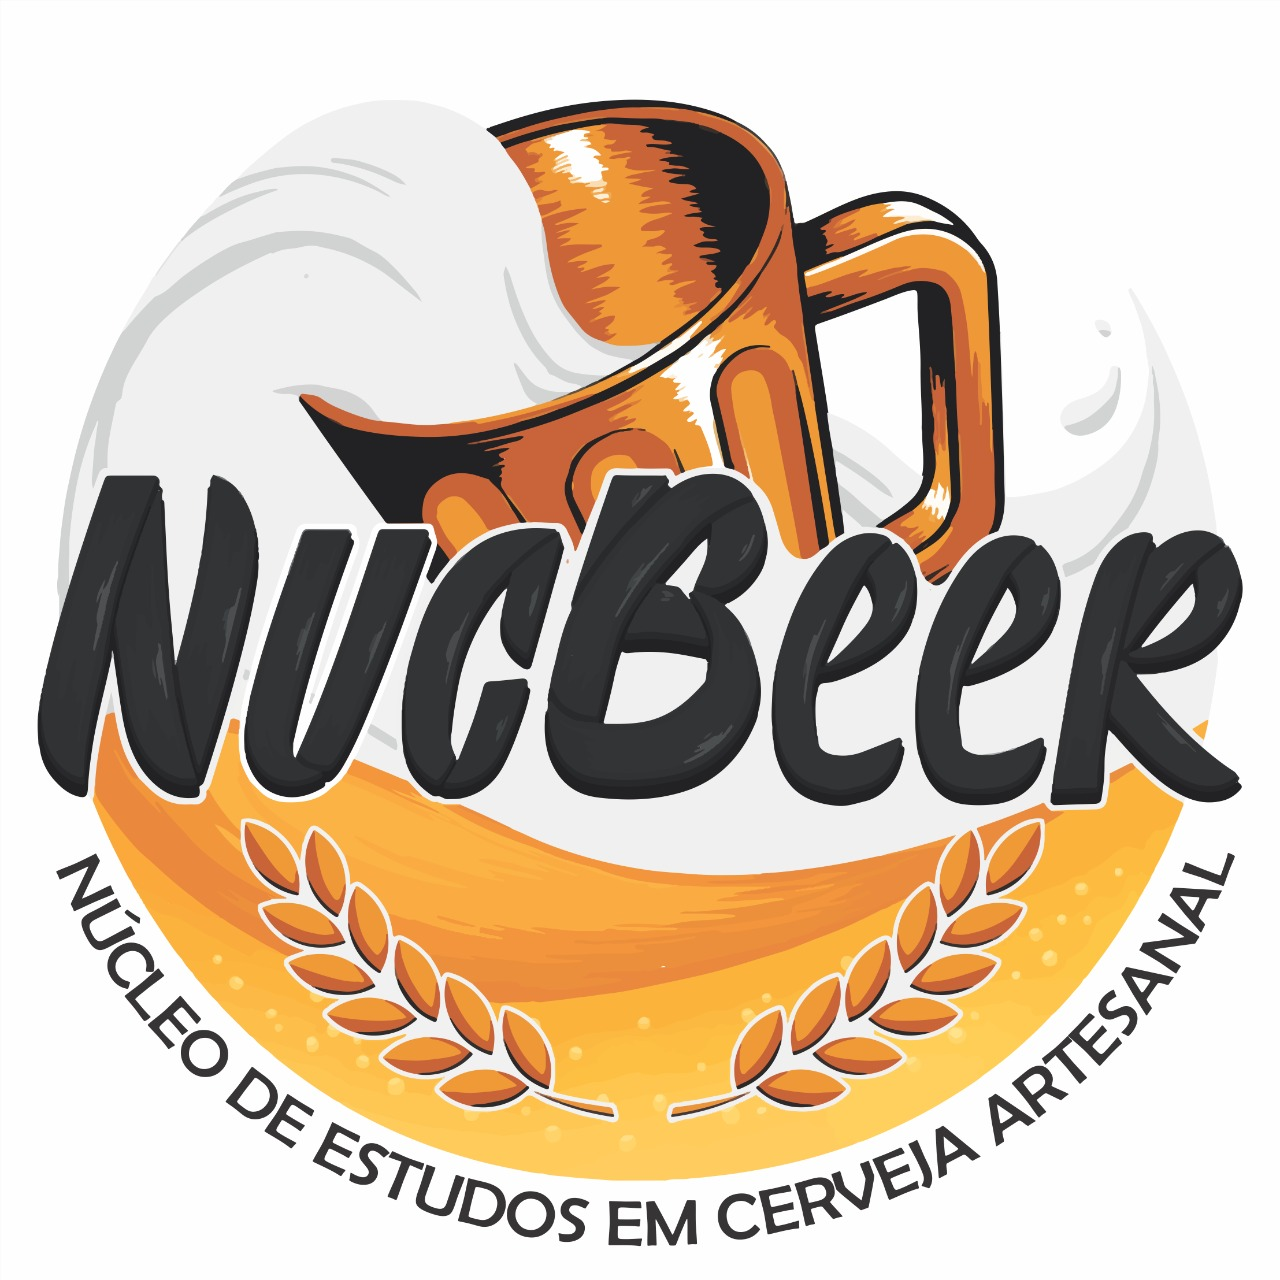 nucbeer logo